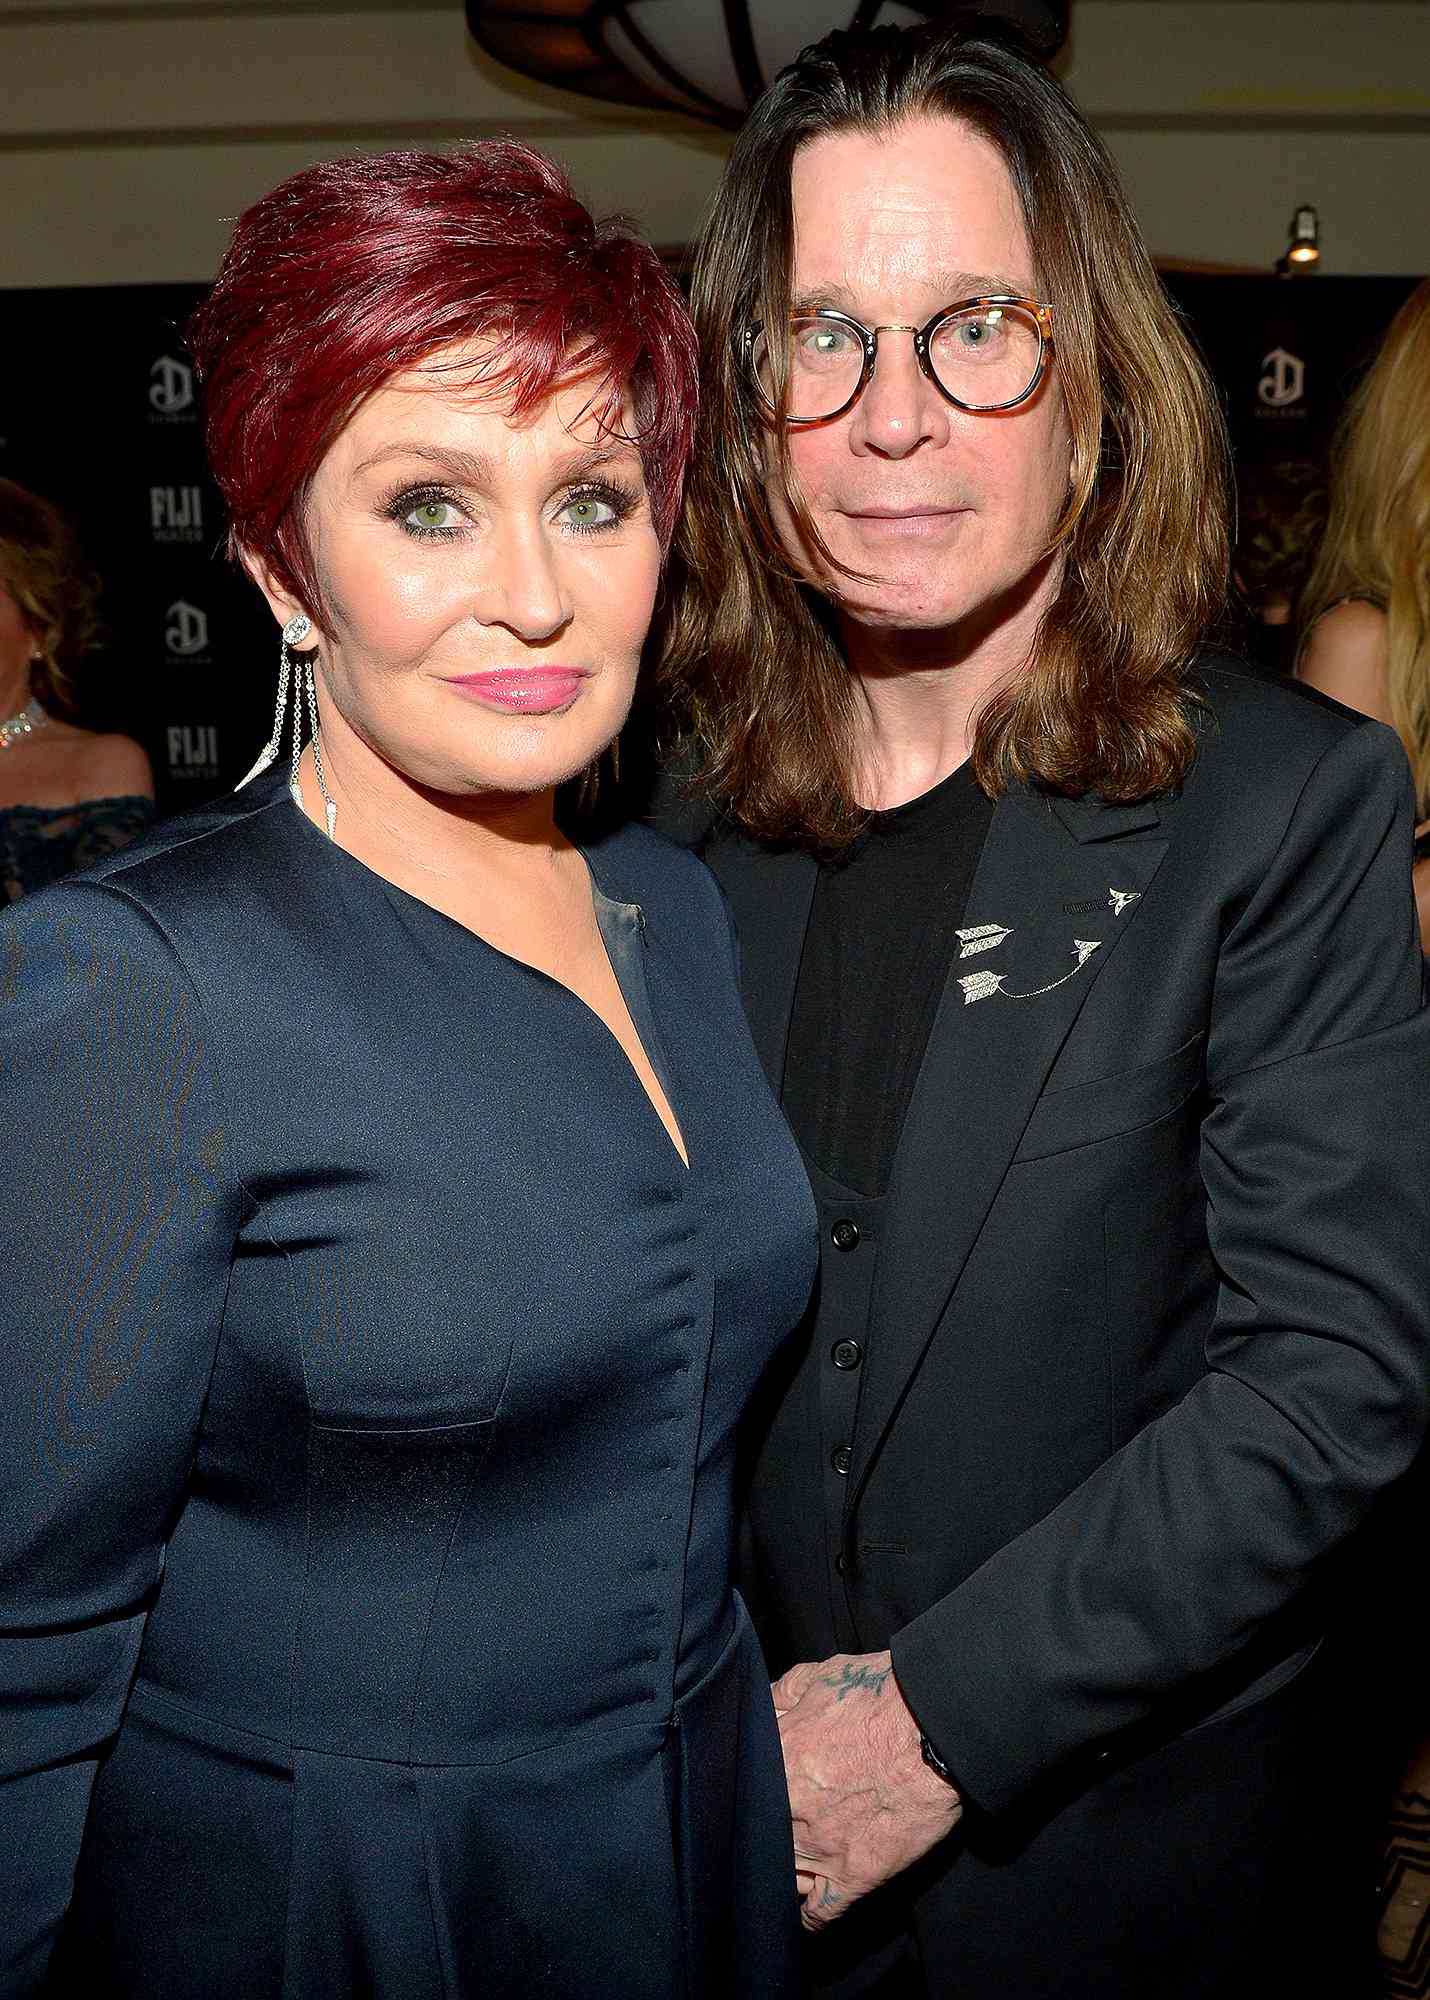    Ozzy Osbourne med sexig, Fru Sharon Osbourne 